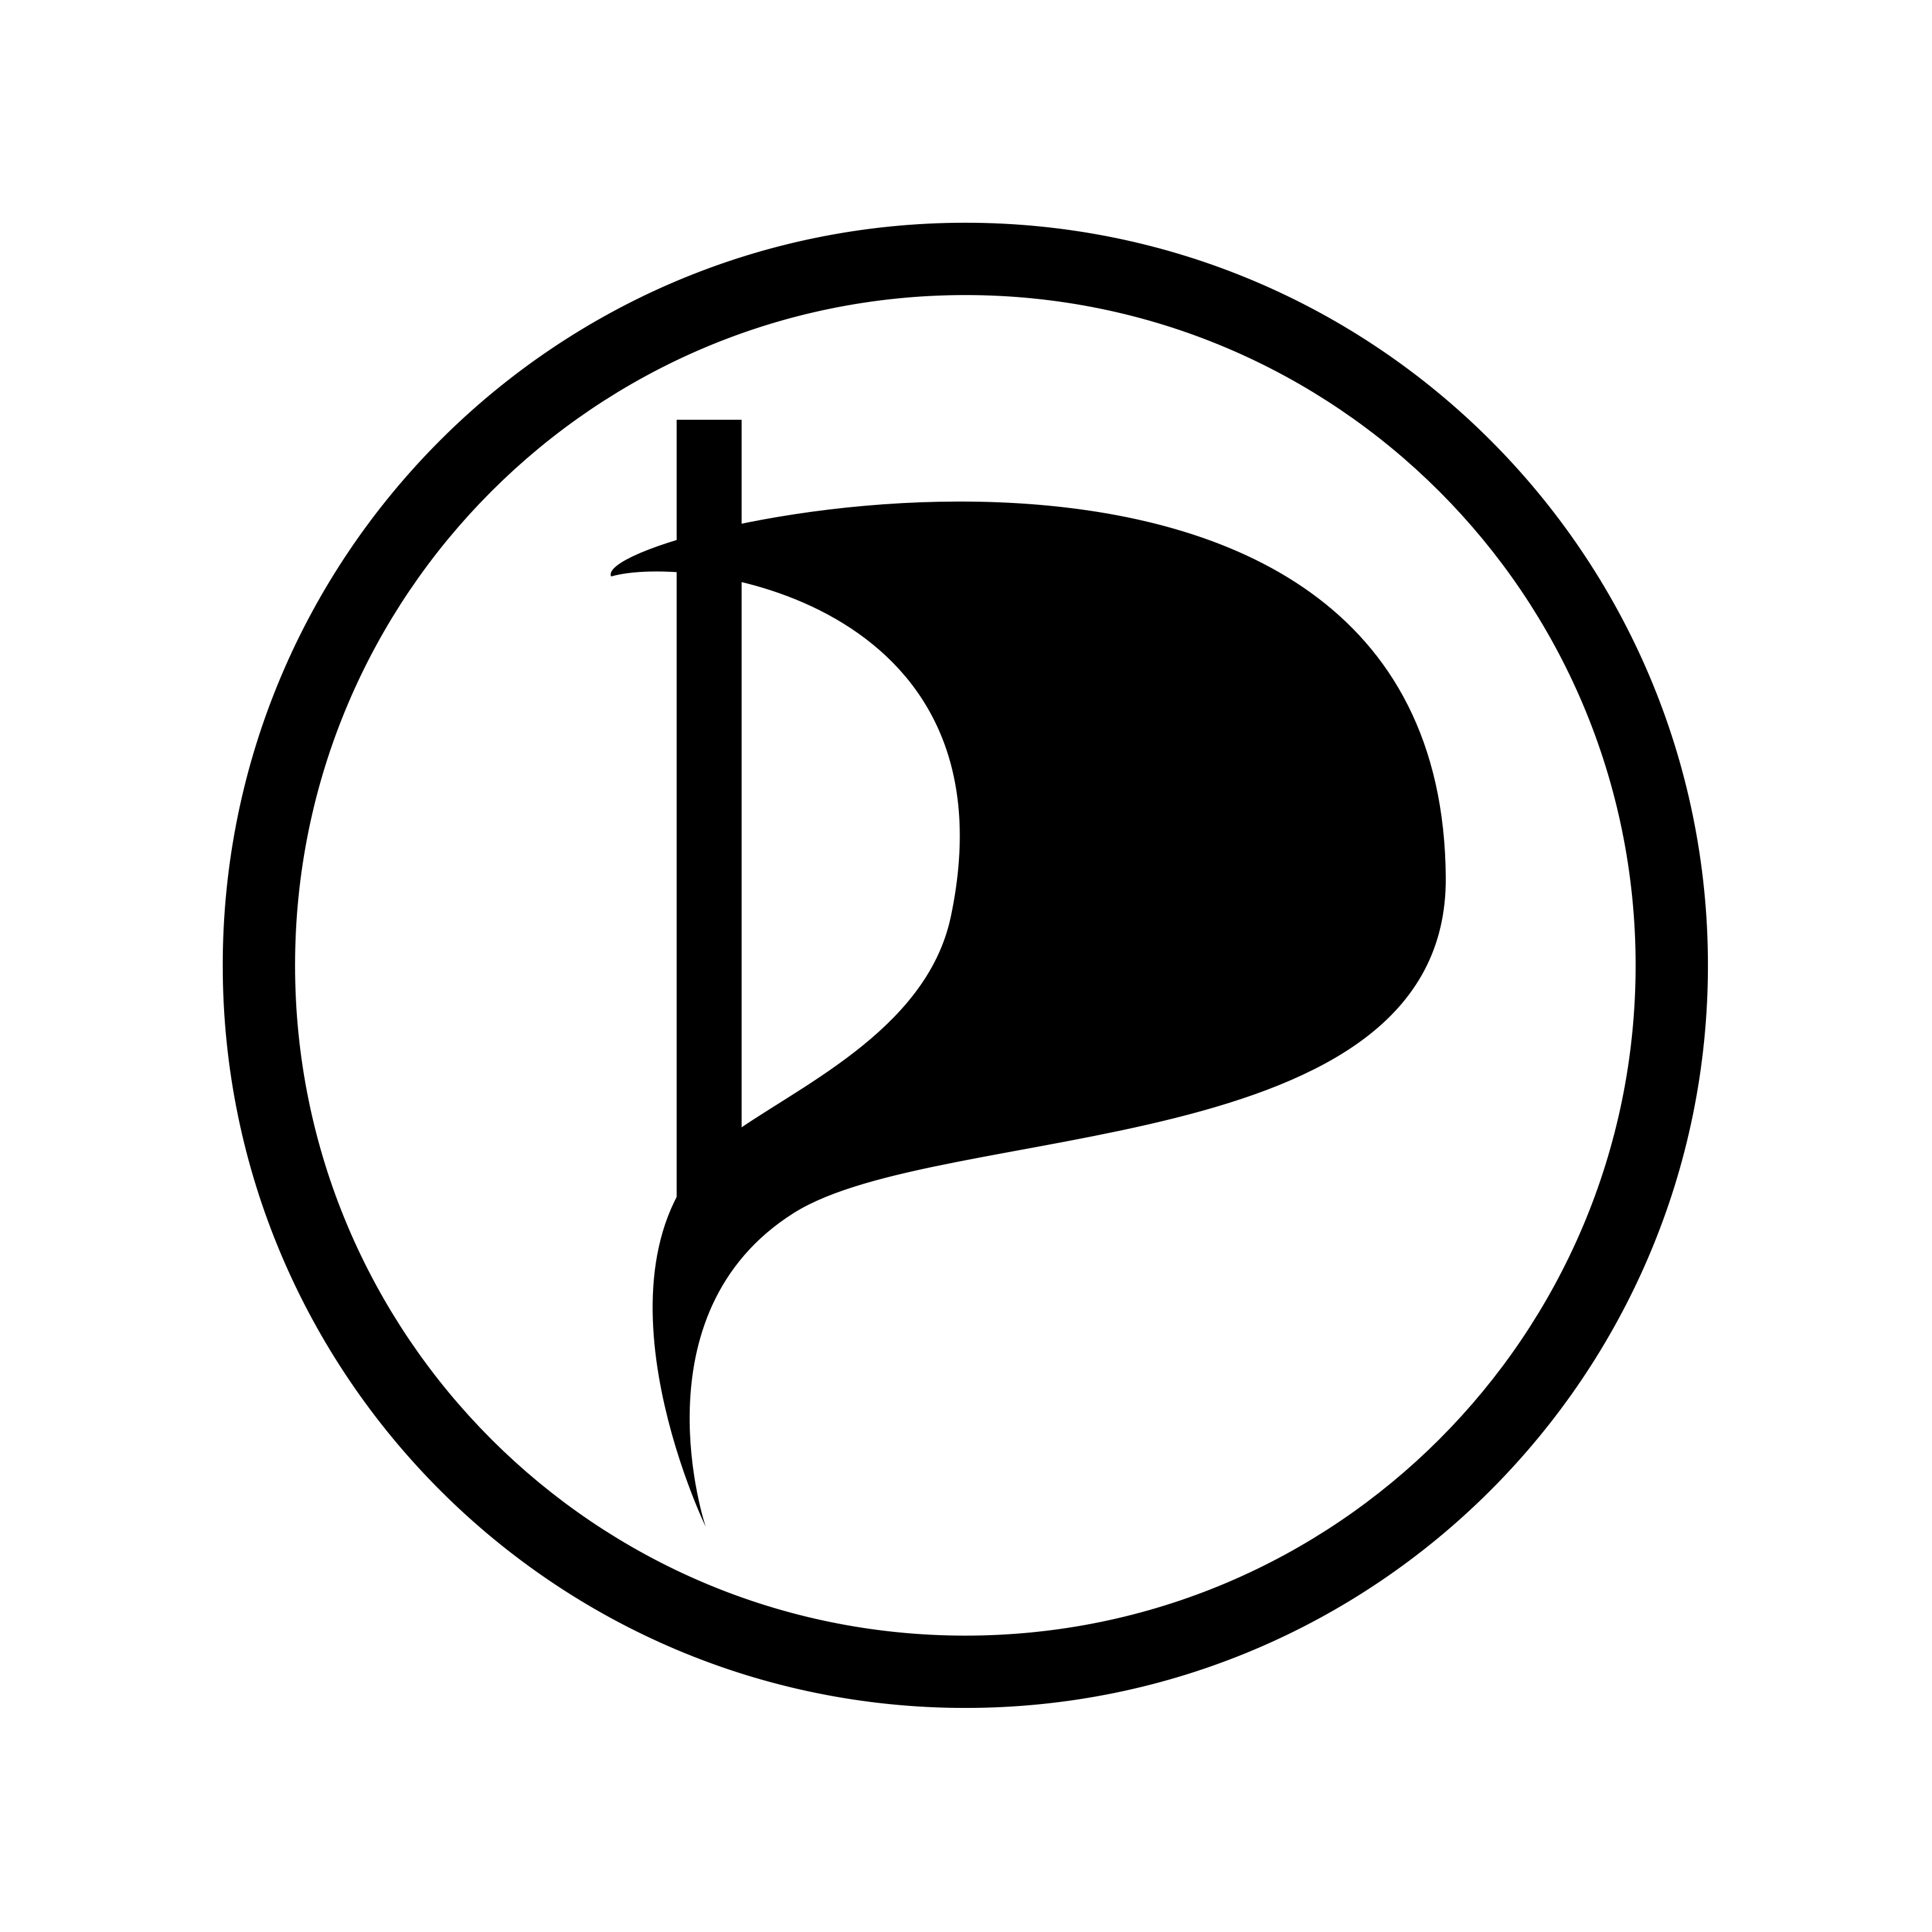 Logga enfärg svart.png